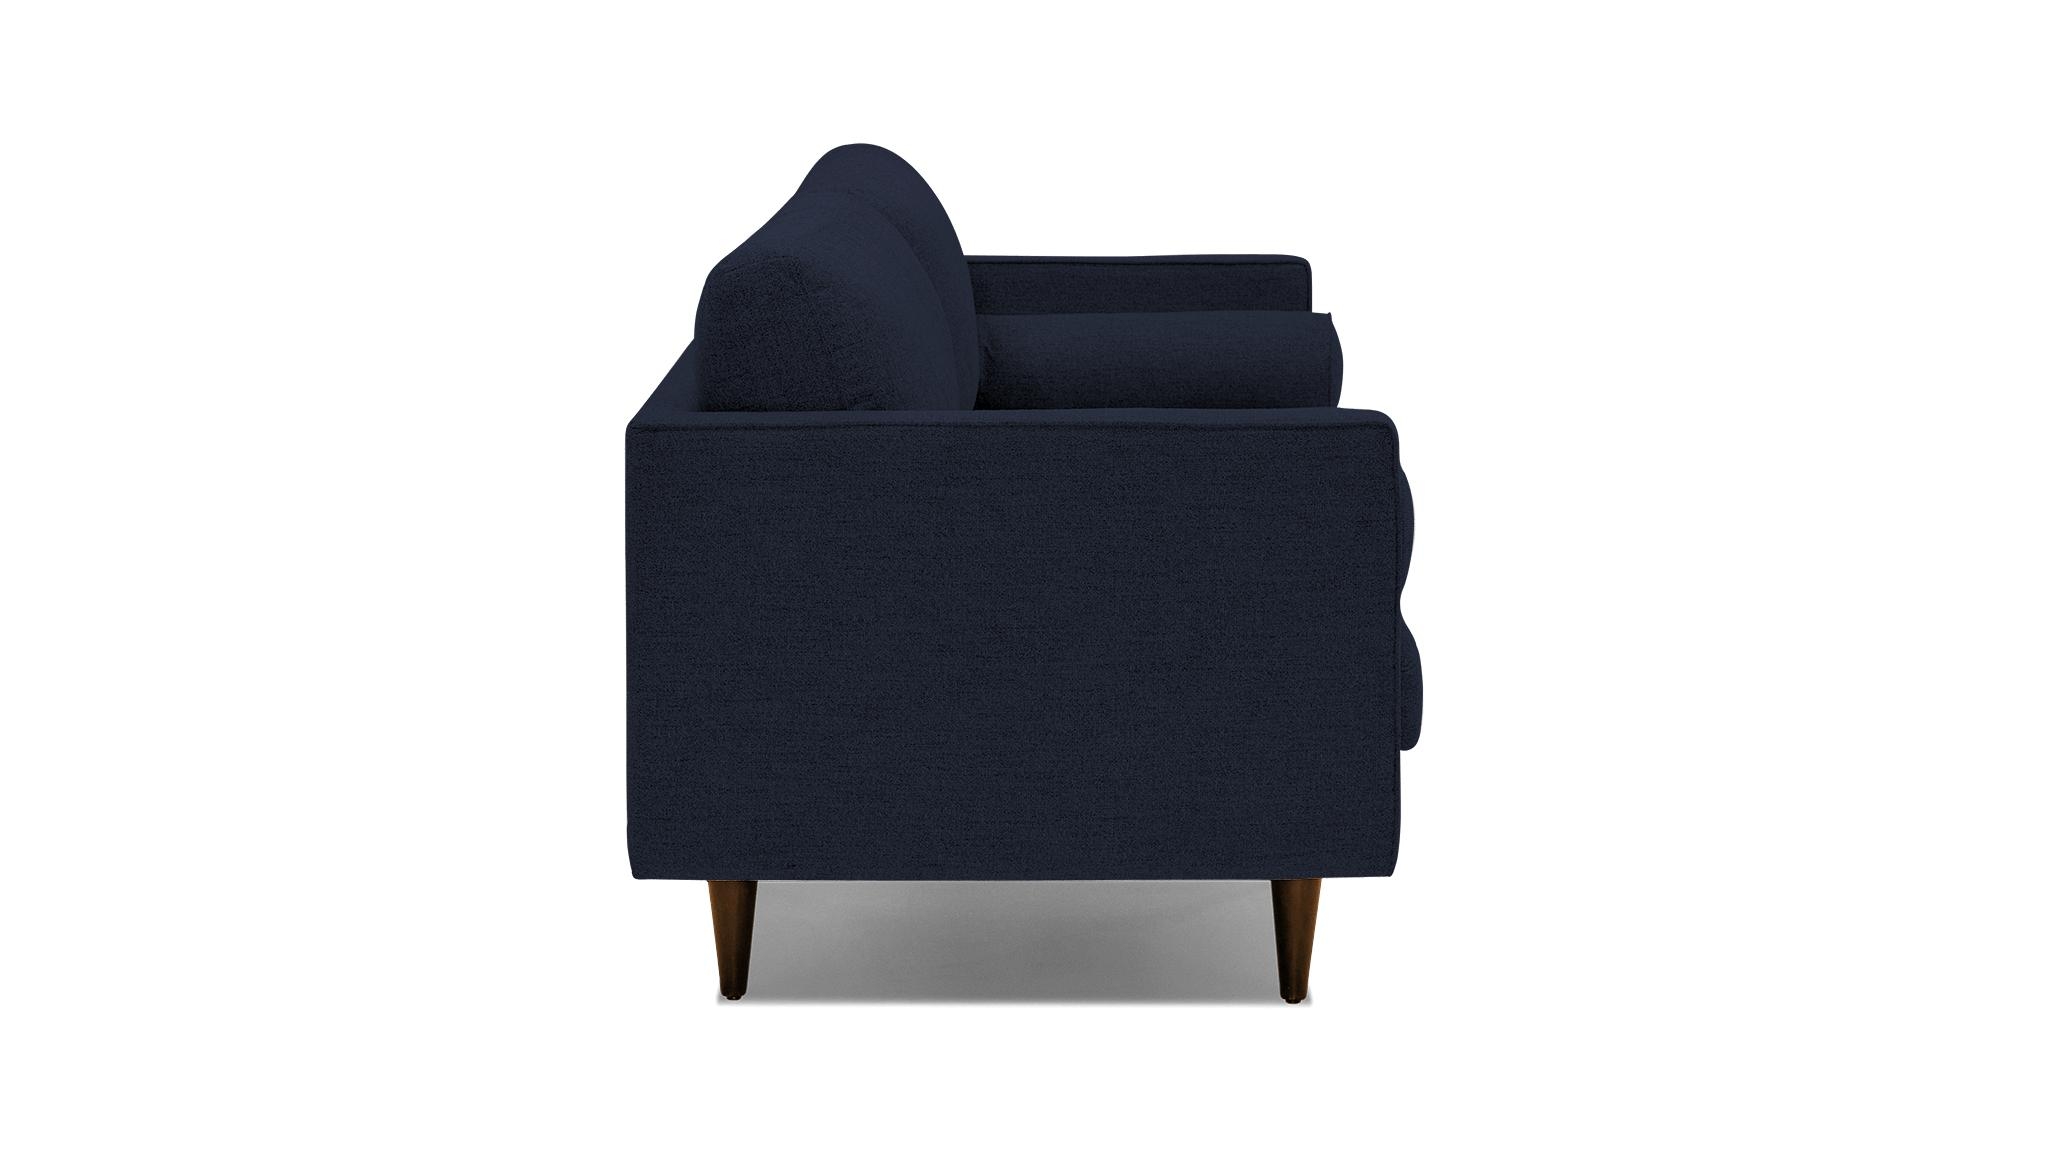 Blue Briar Mid Century Modern Sofa - Sunbrella Premier Indigo - Mocha - Image 2